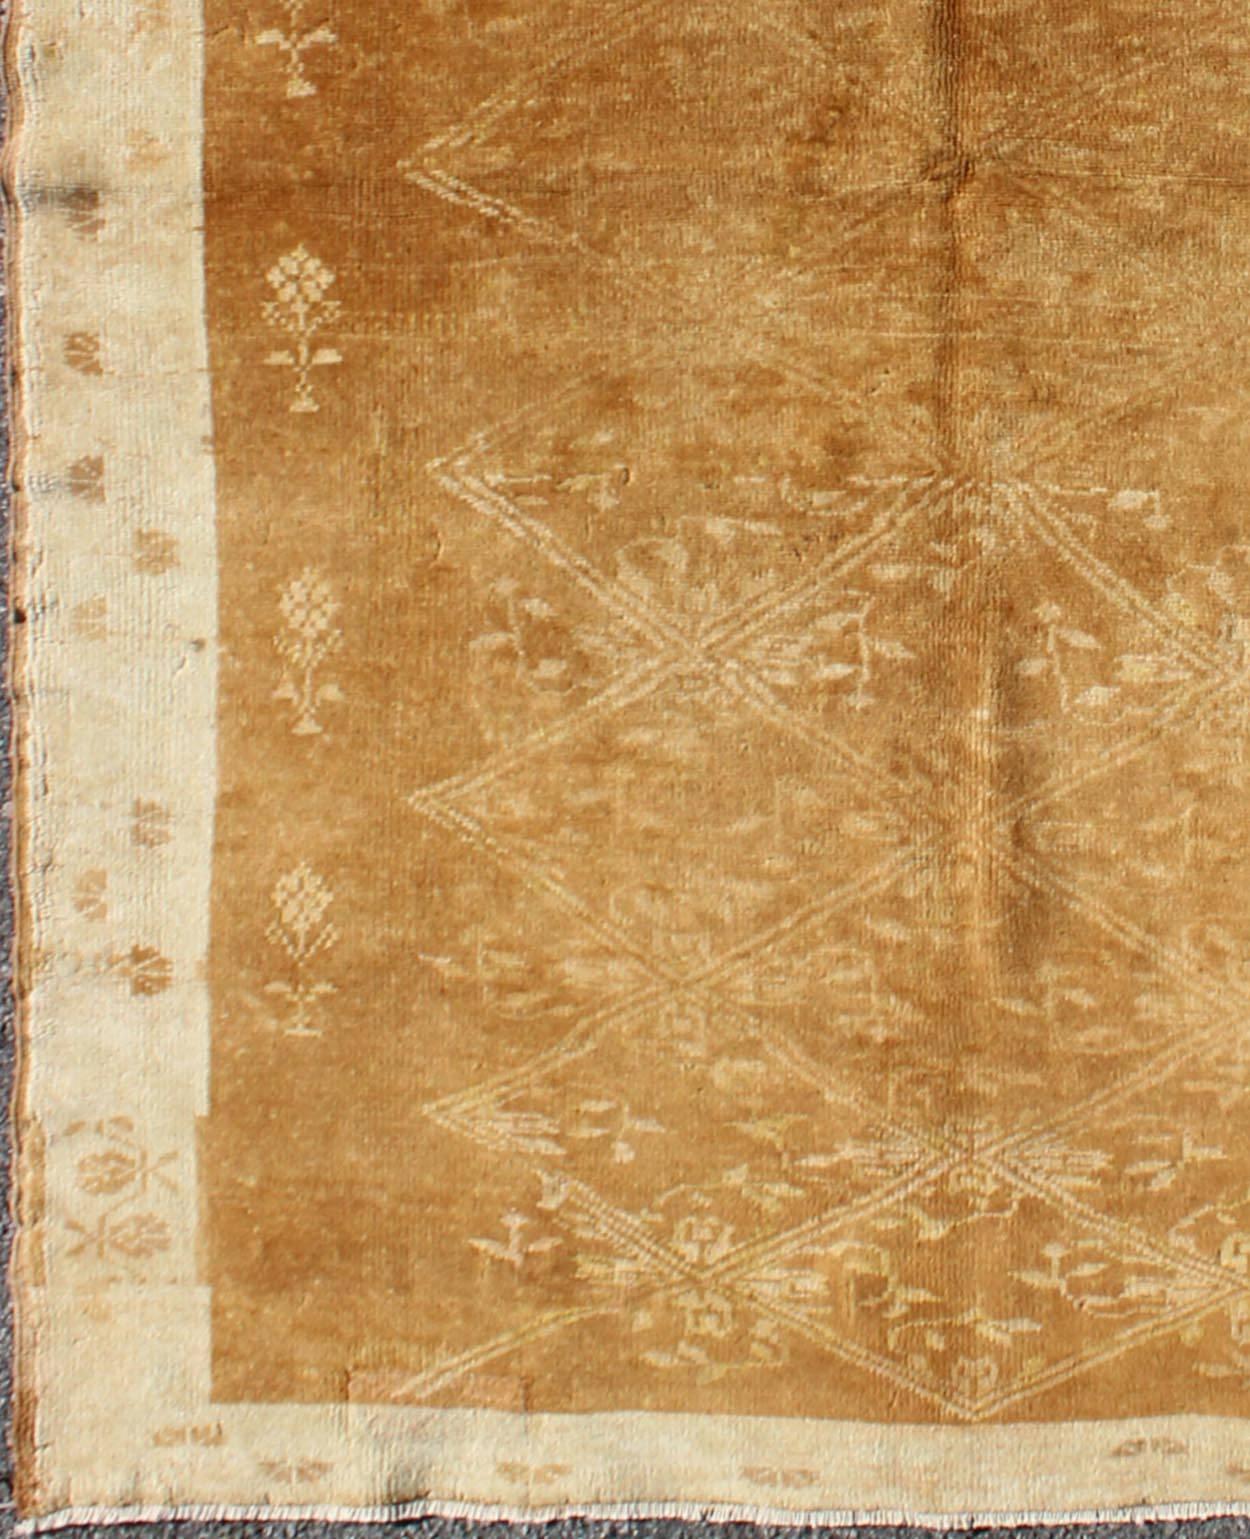 Tapis Oushak vintage brun clair avec motif floral en treillis, tapis tu-9501, pays d'origine / type : Turquie / Oushak, vers le milieu du 20e siècle

Sur un fond brun clair avec un motif floral en treillis, ce magnifique tapis Oushak vintage (vers